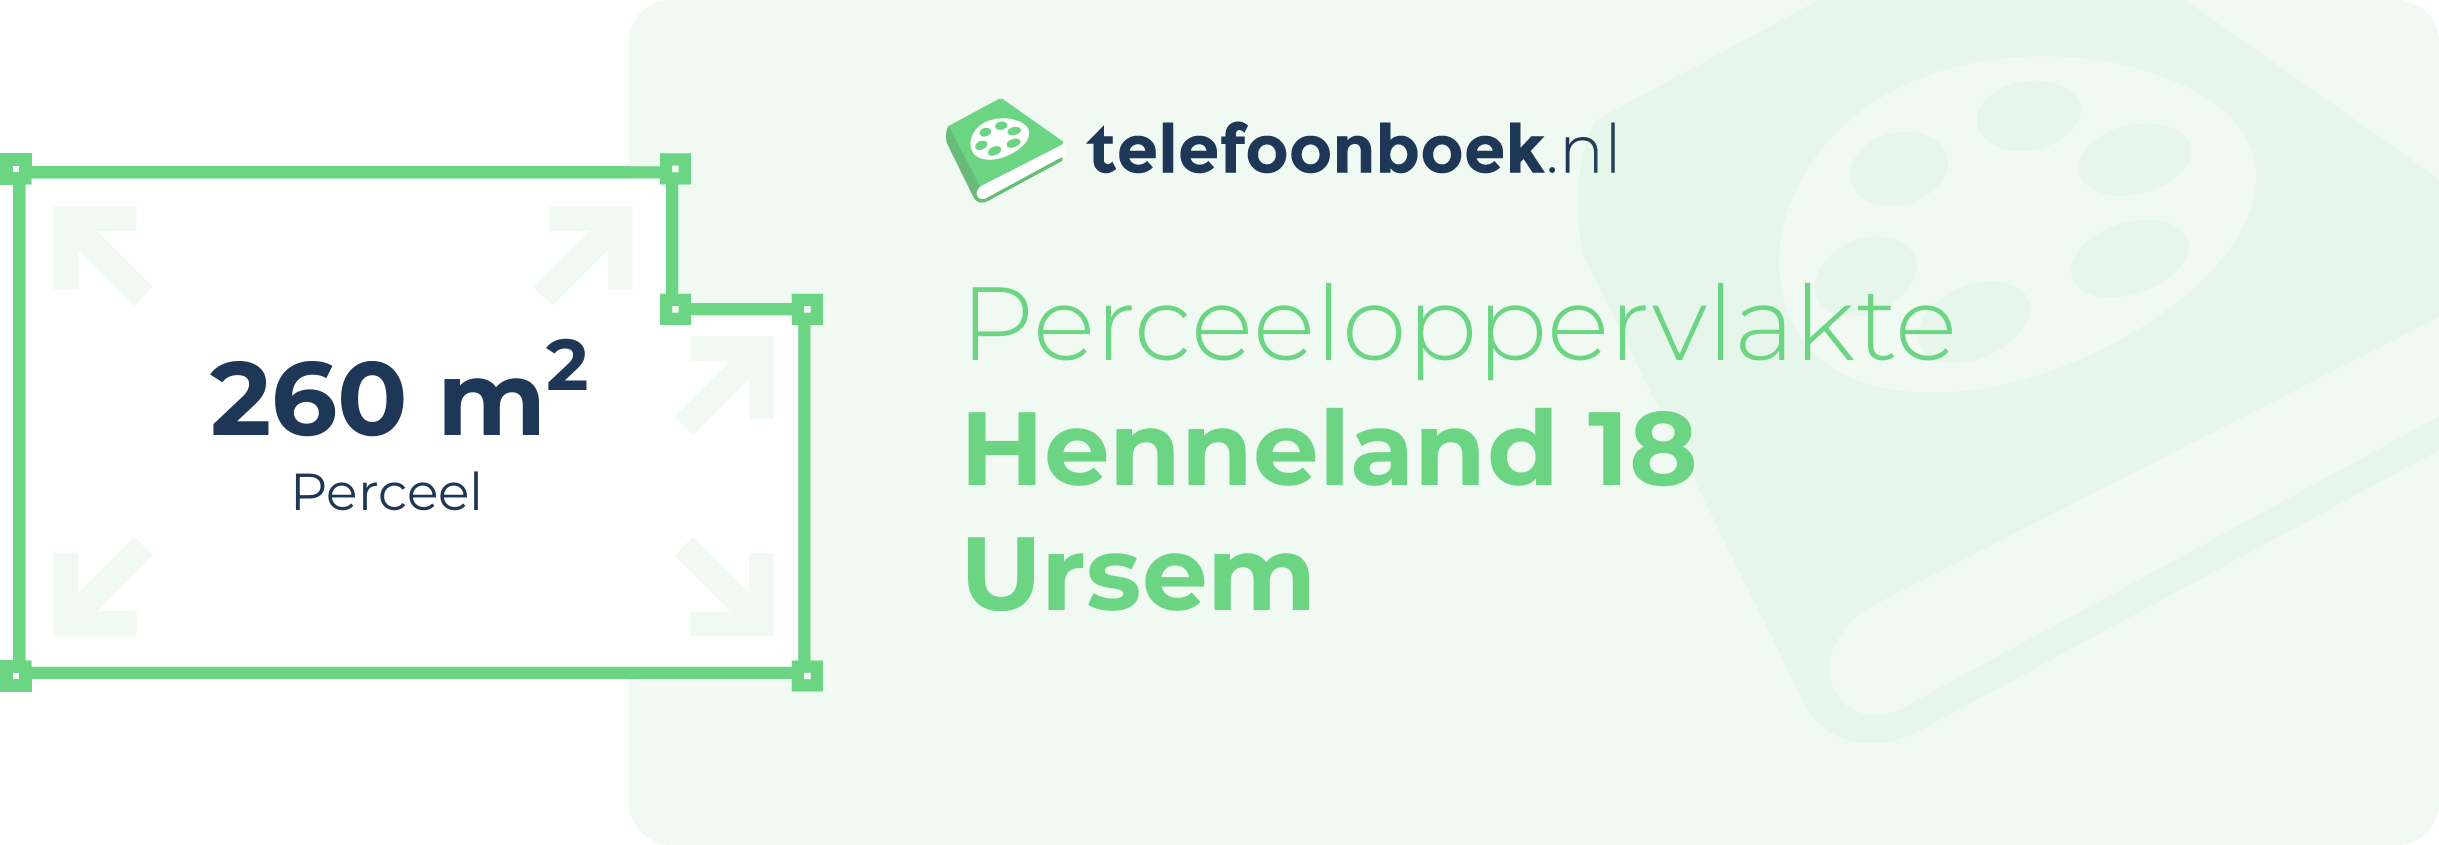 Perceeloppervlakte Henneland 18 Ursem